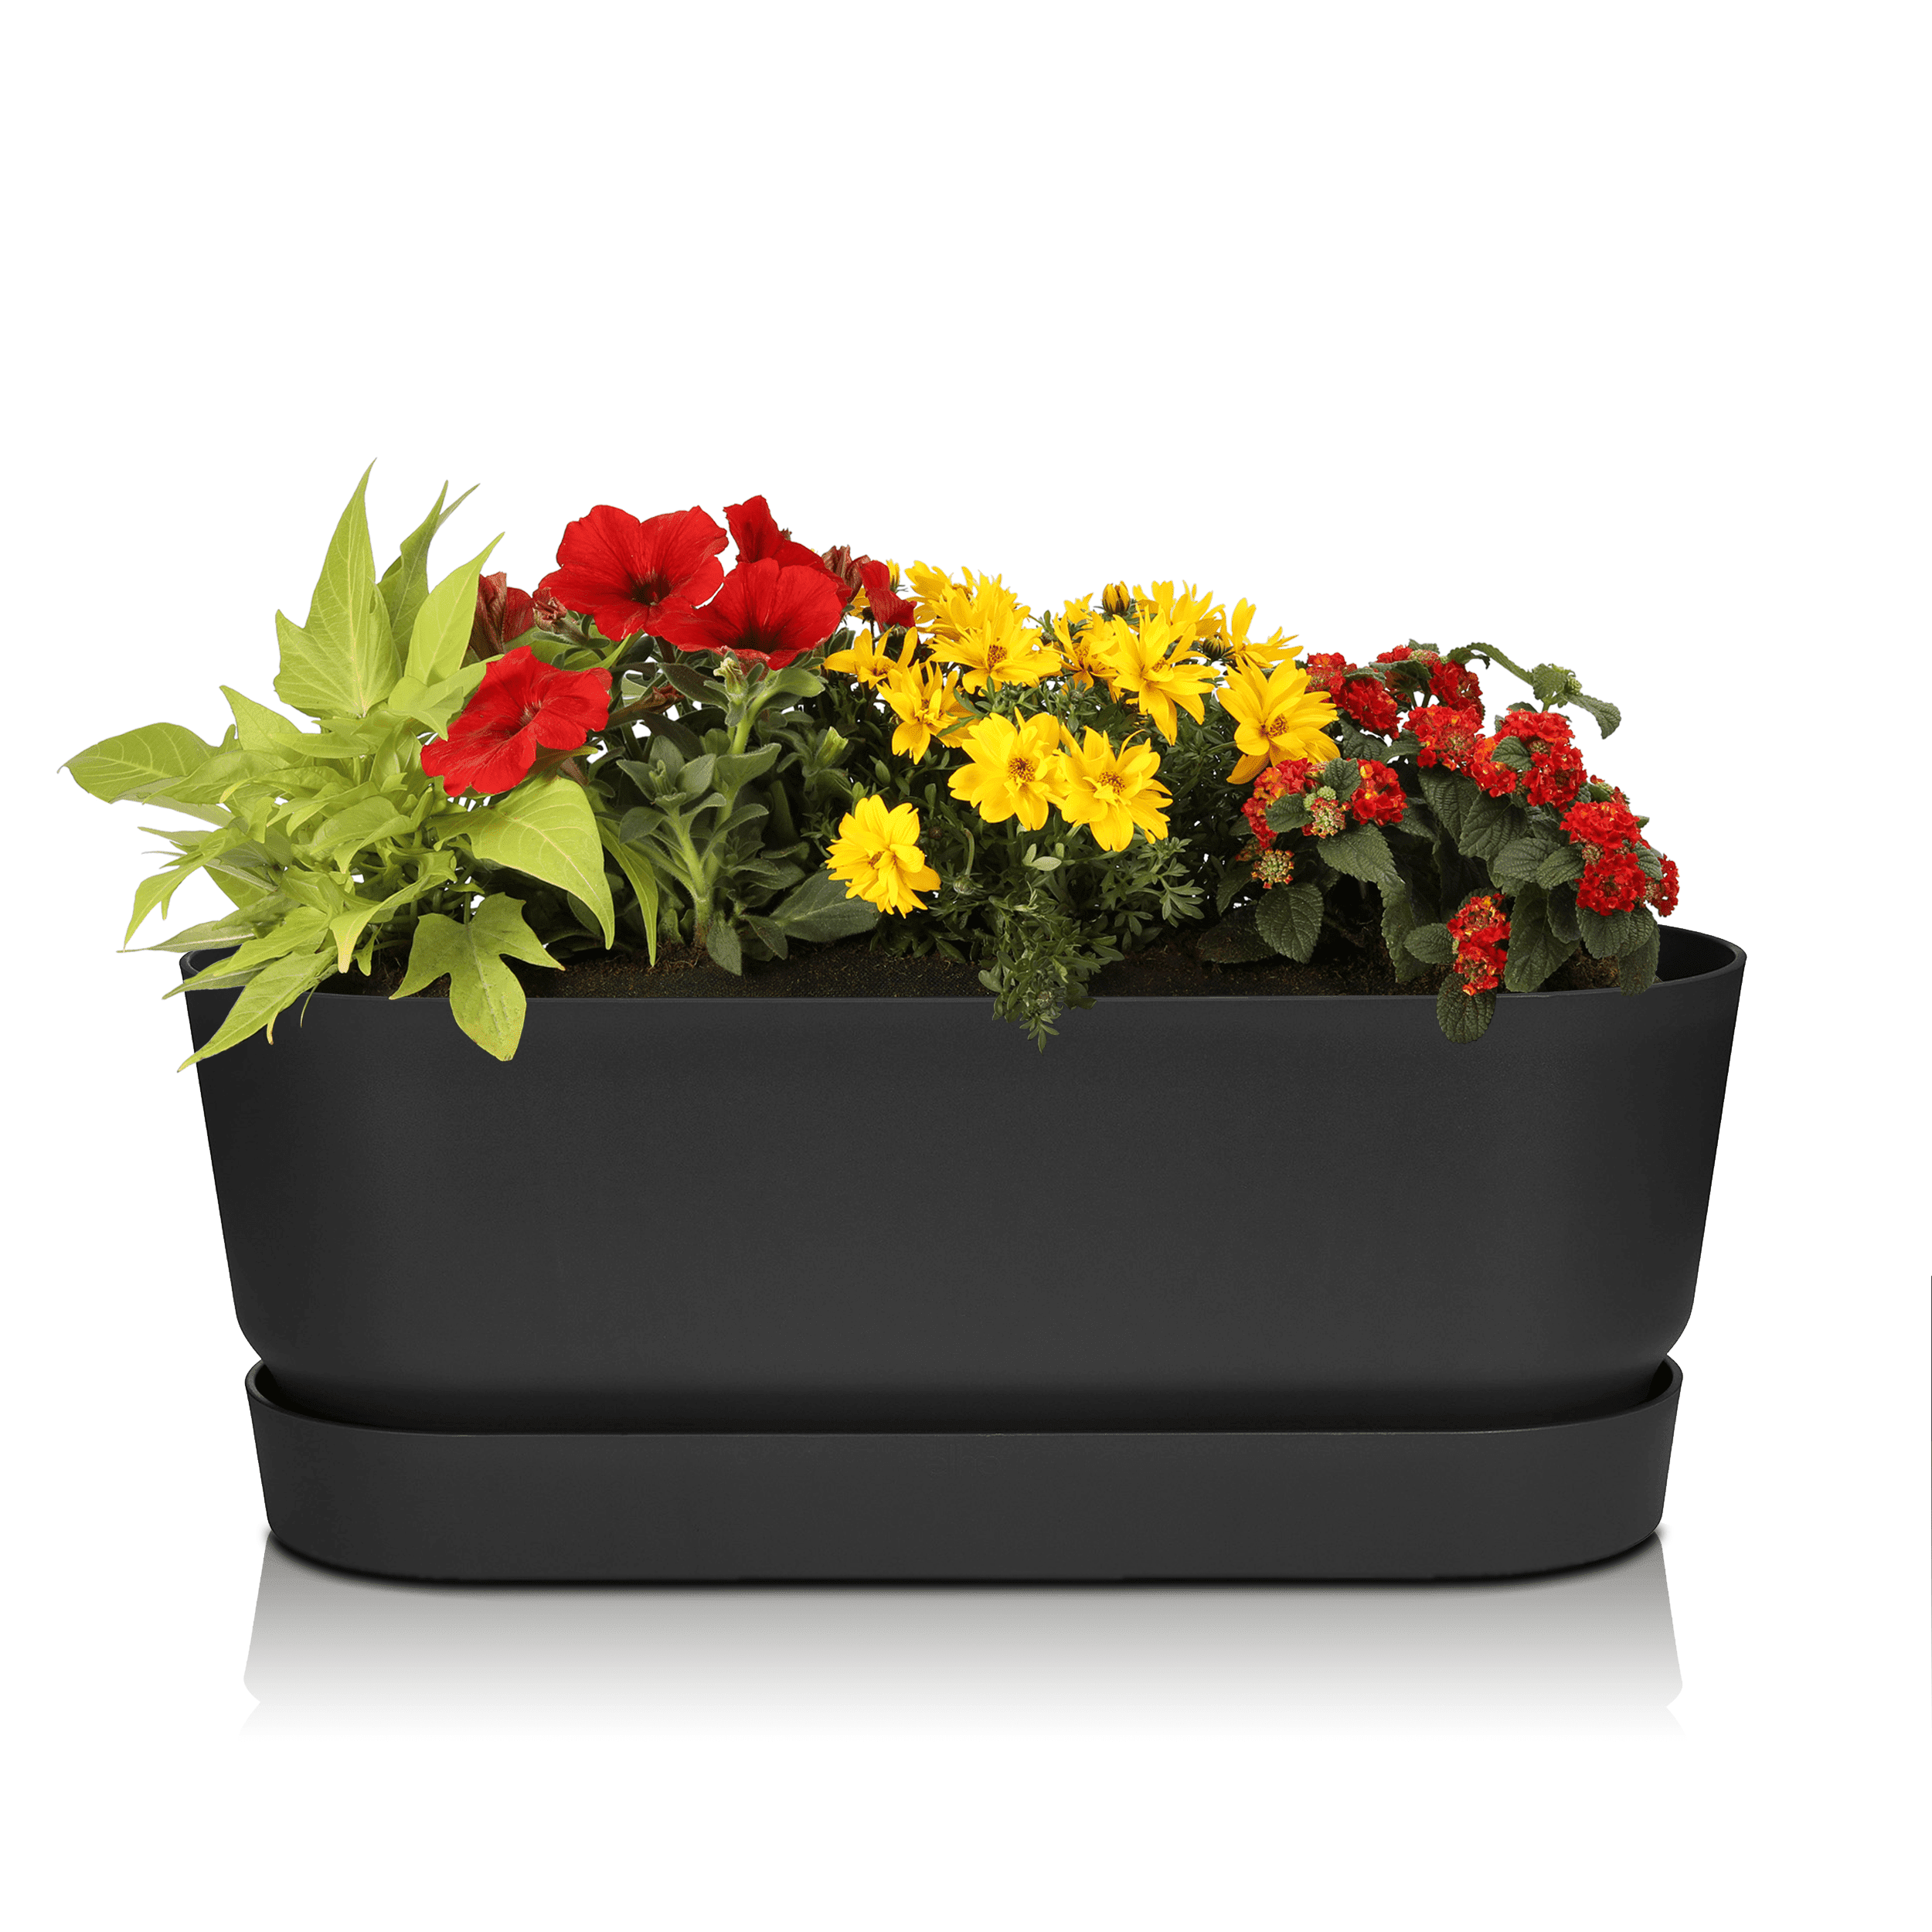 Sommerblumen Starter-Set Greenville schwarz 50 cm rot/orange/gelb Sonne